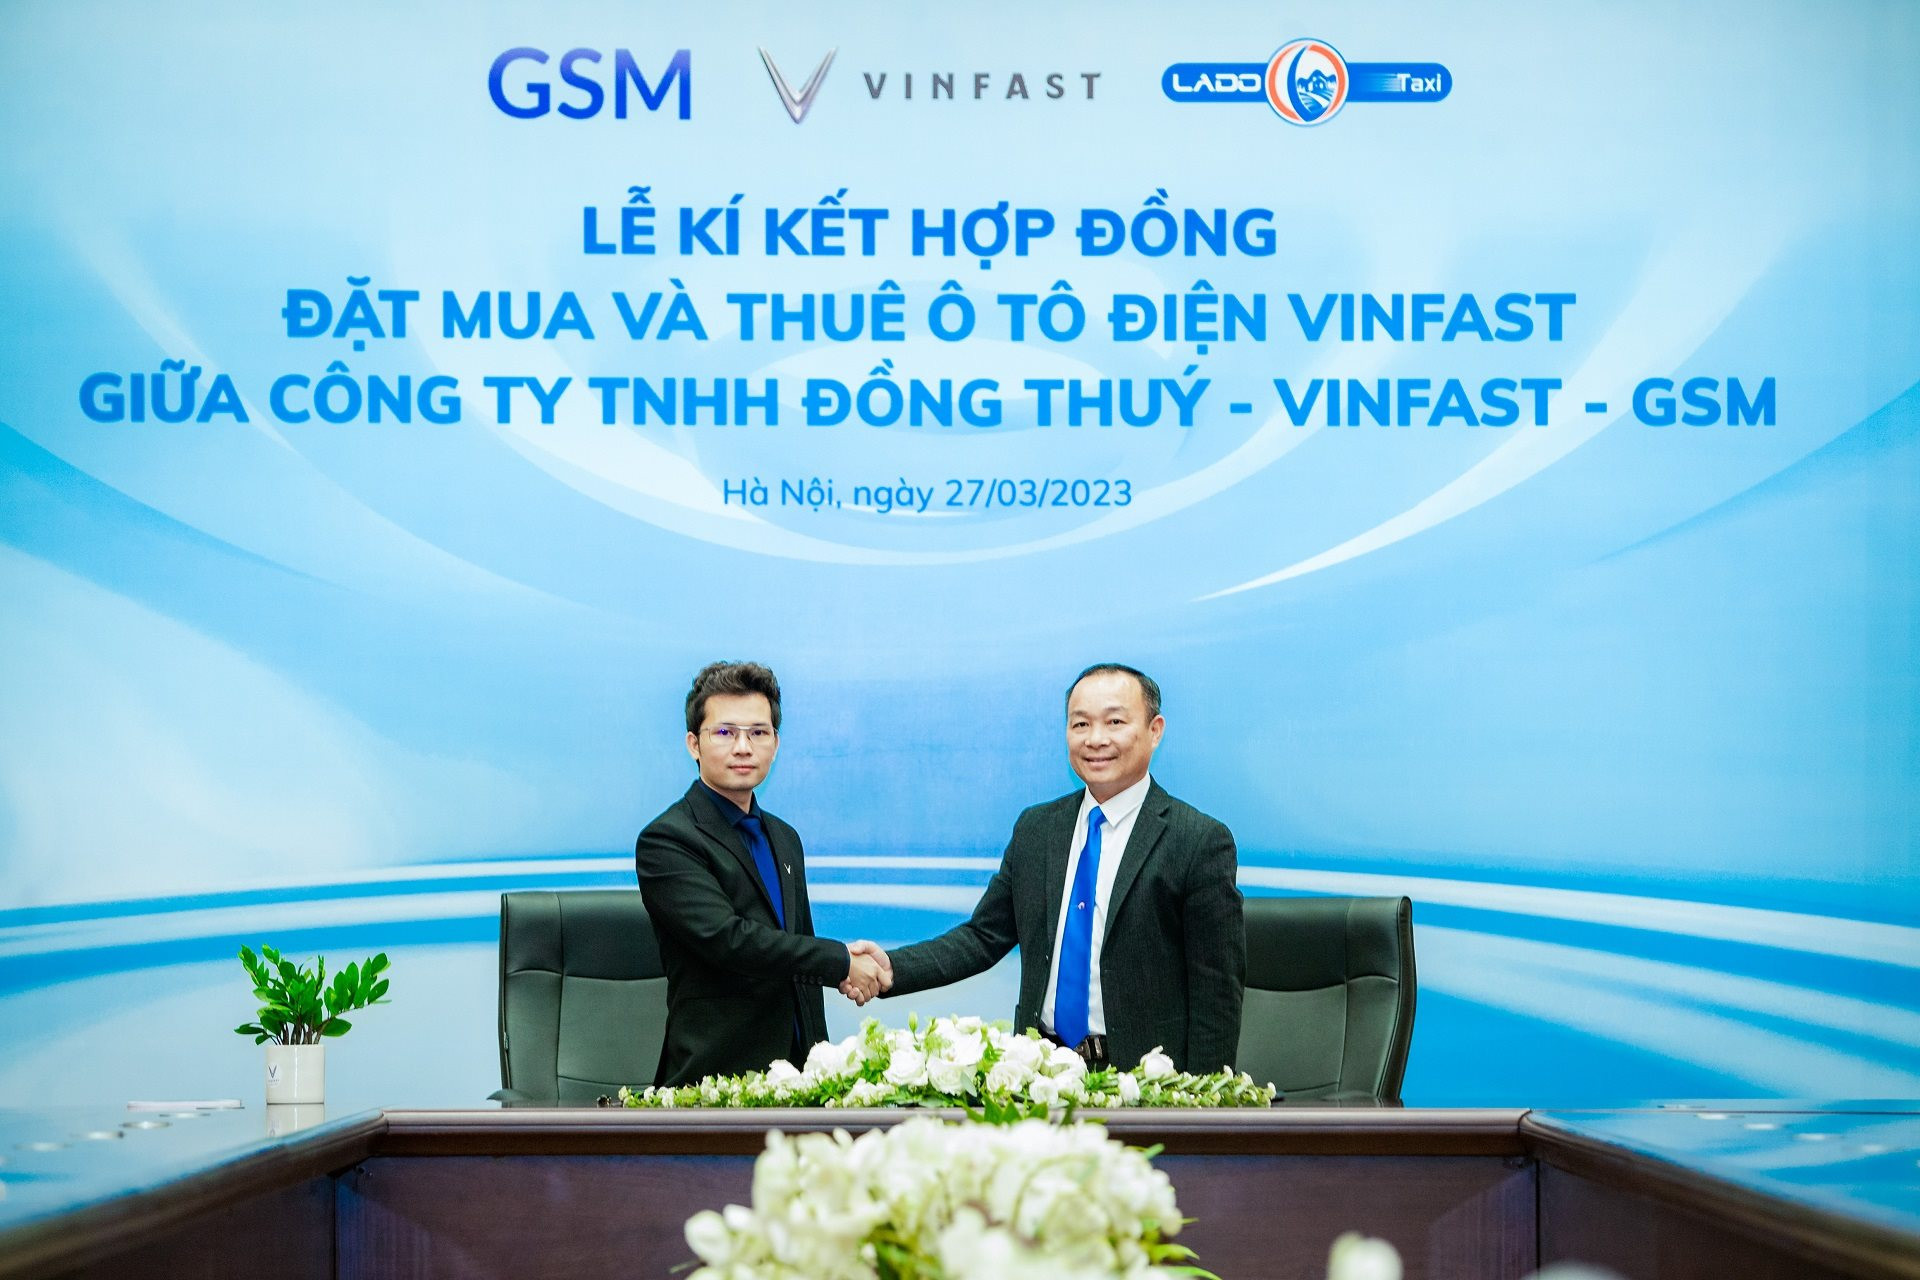 Ông Nguyễn Văn Thanh - Tổng giám đốc Công ty GSM kiêm Phó Tổng giám đốc VinFast Việt Nam và ông Nguyễn Ngọc Đồng - Tổng giám đốc Công ty TNHH Đồng Thuý ký kết hợp đồng mua, thuê xe ô tô điện VinFast.